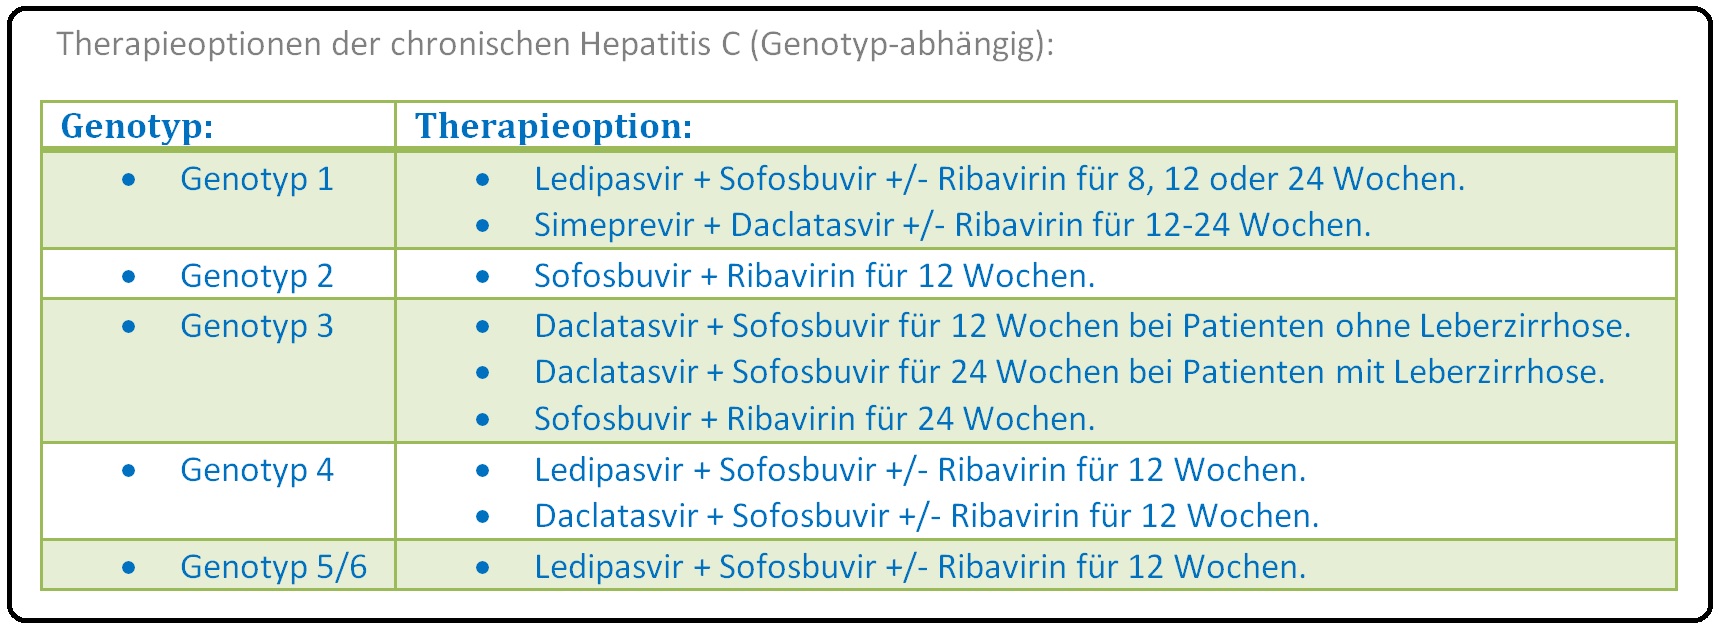 555 Therapieoptionen der chronischen Hepatitis C